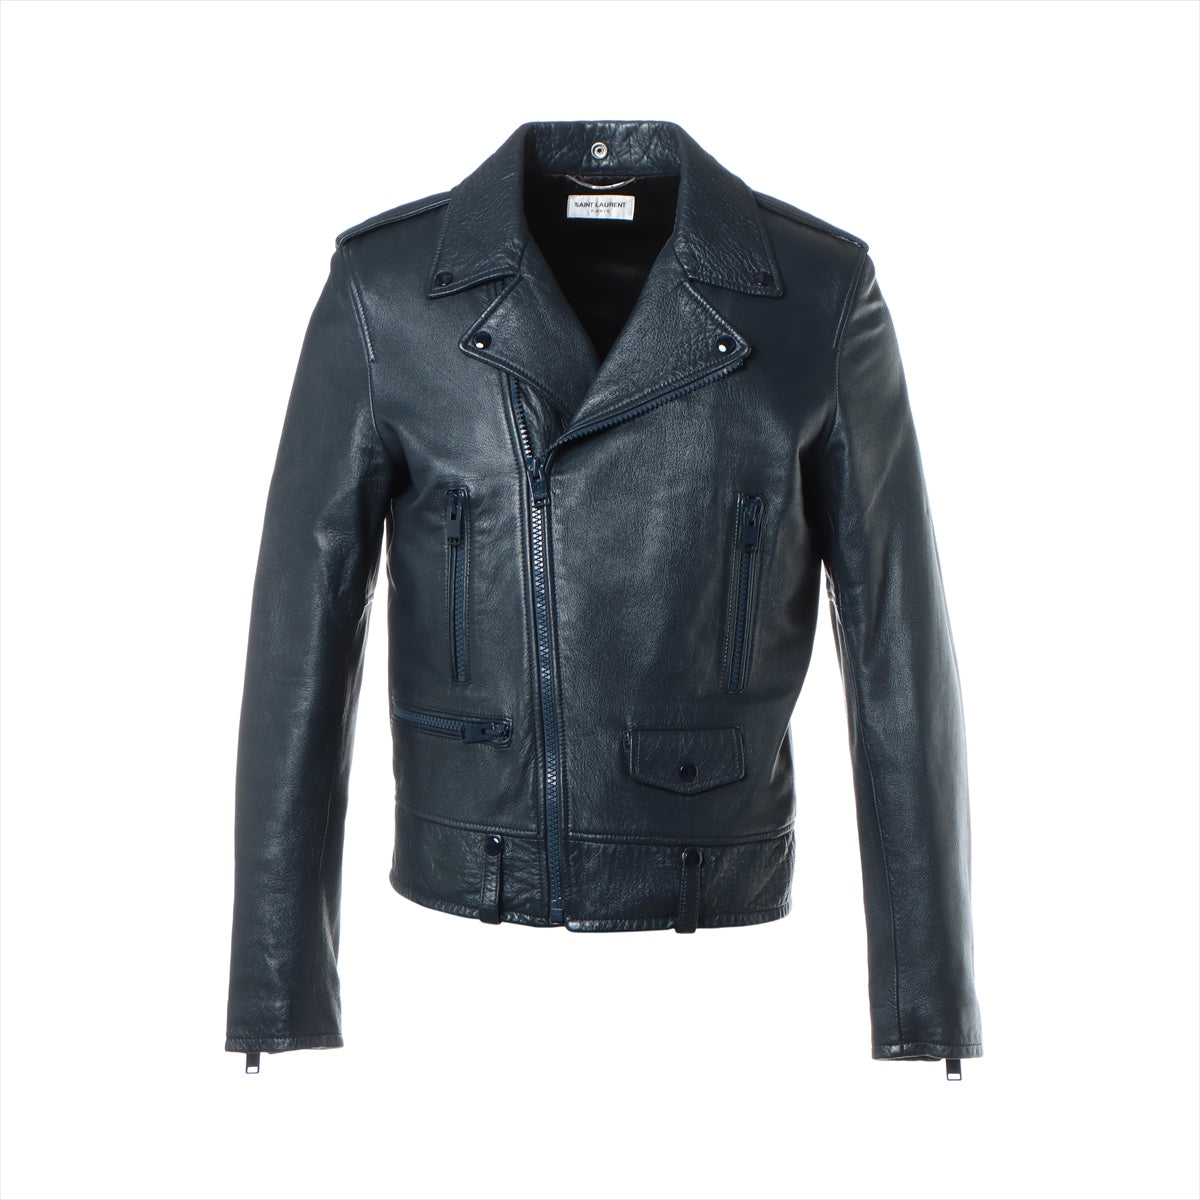 Saint Laurent Paris 16 years Ram Leather jacket 50 Men's Blue  442929 classic motorcycles